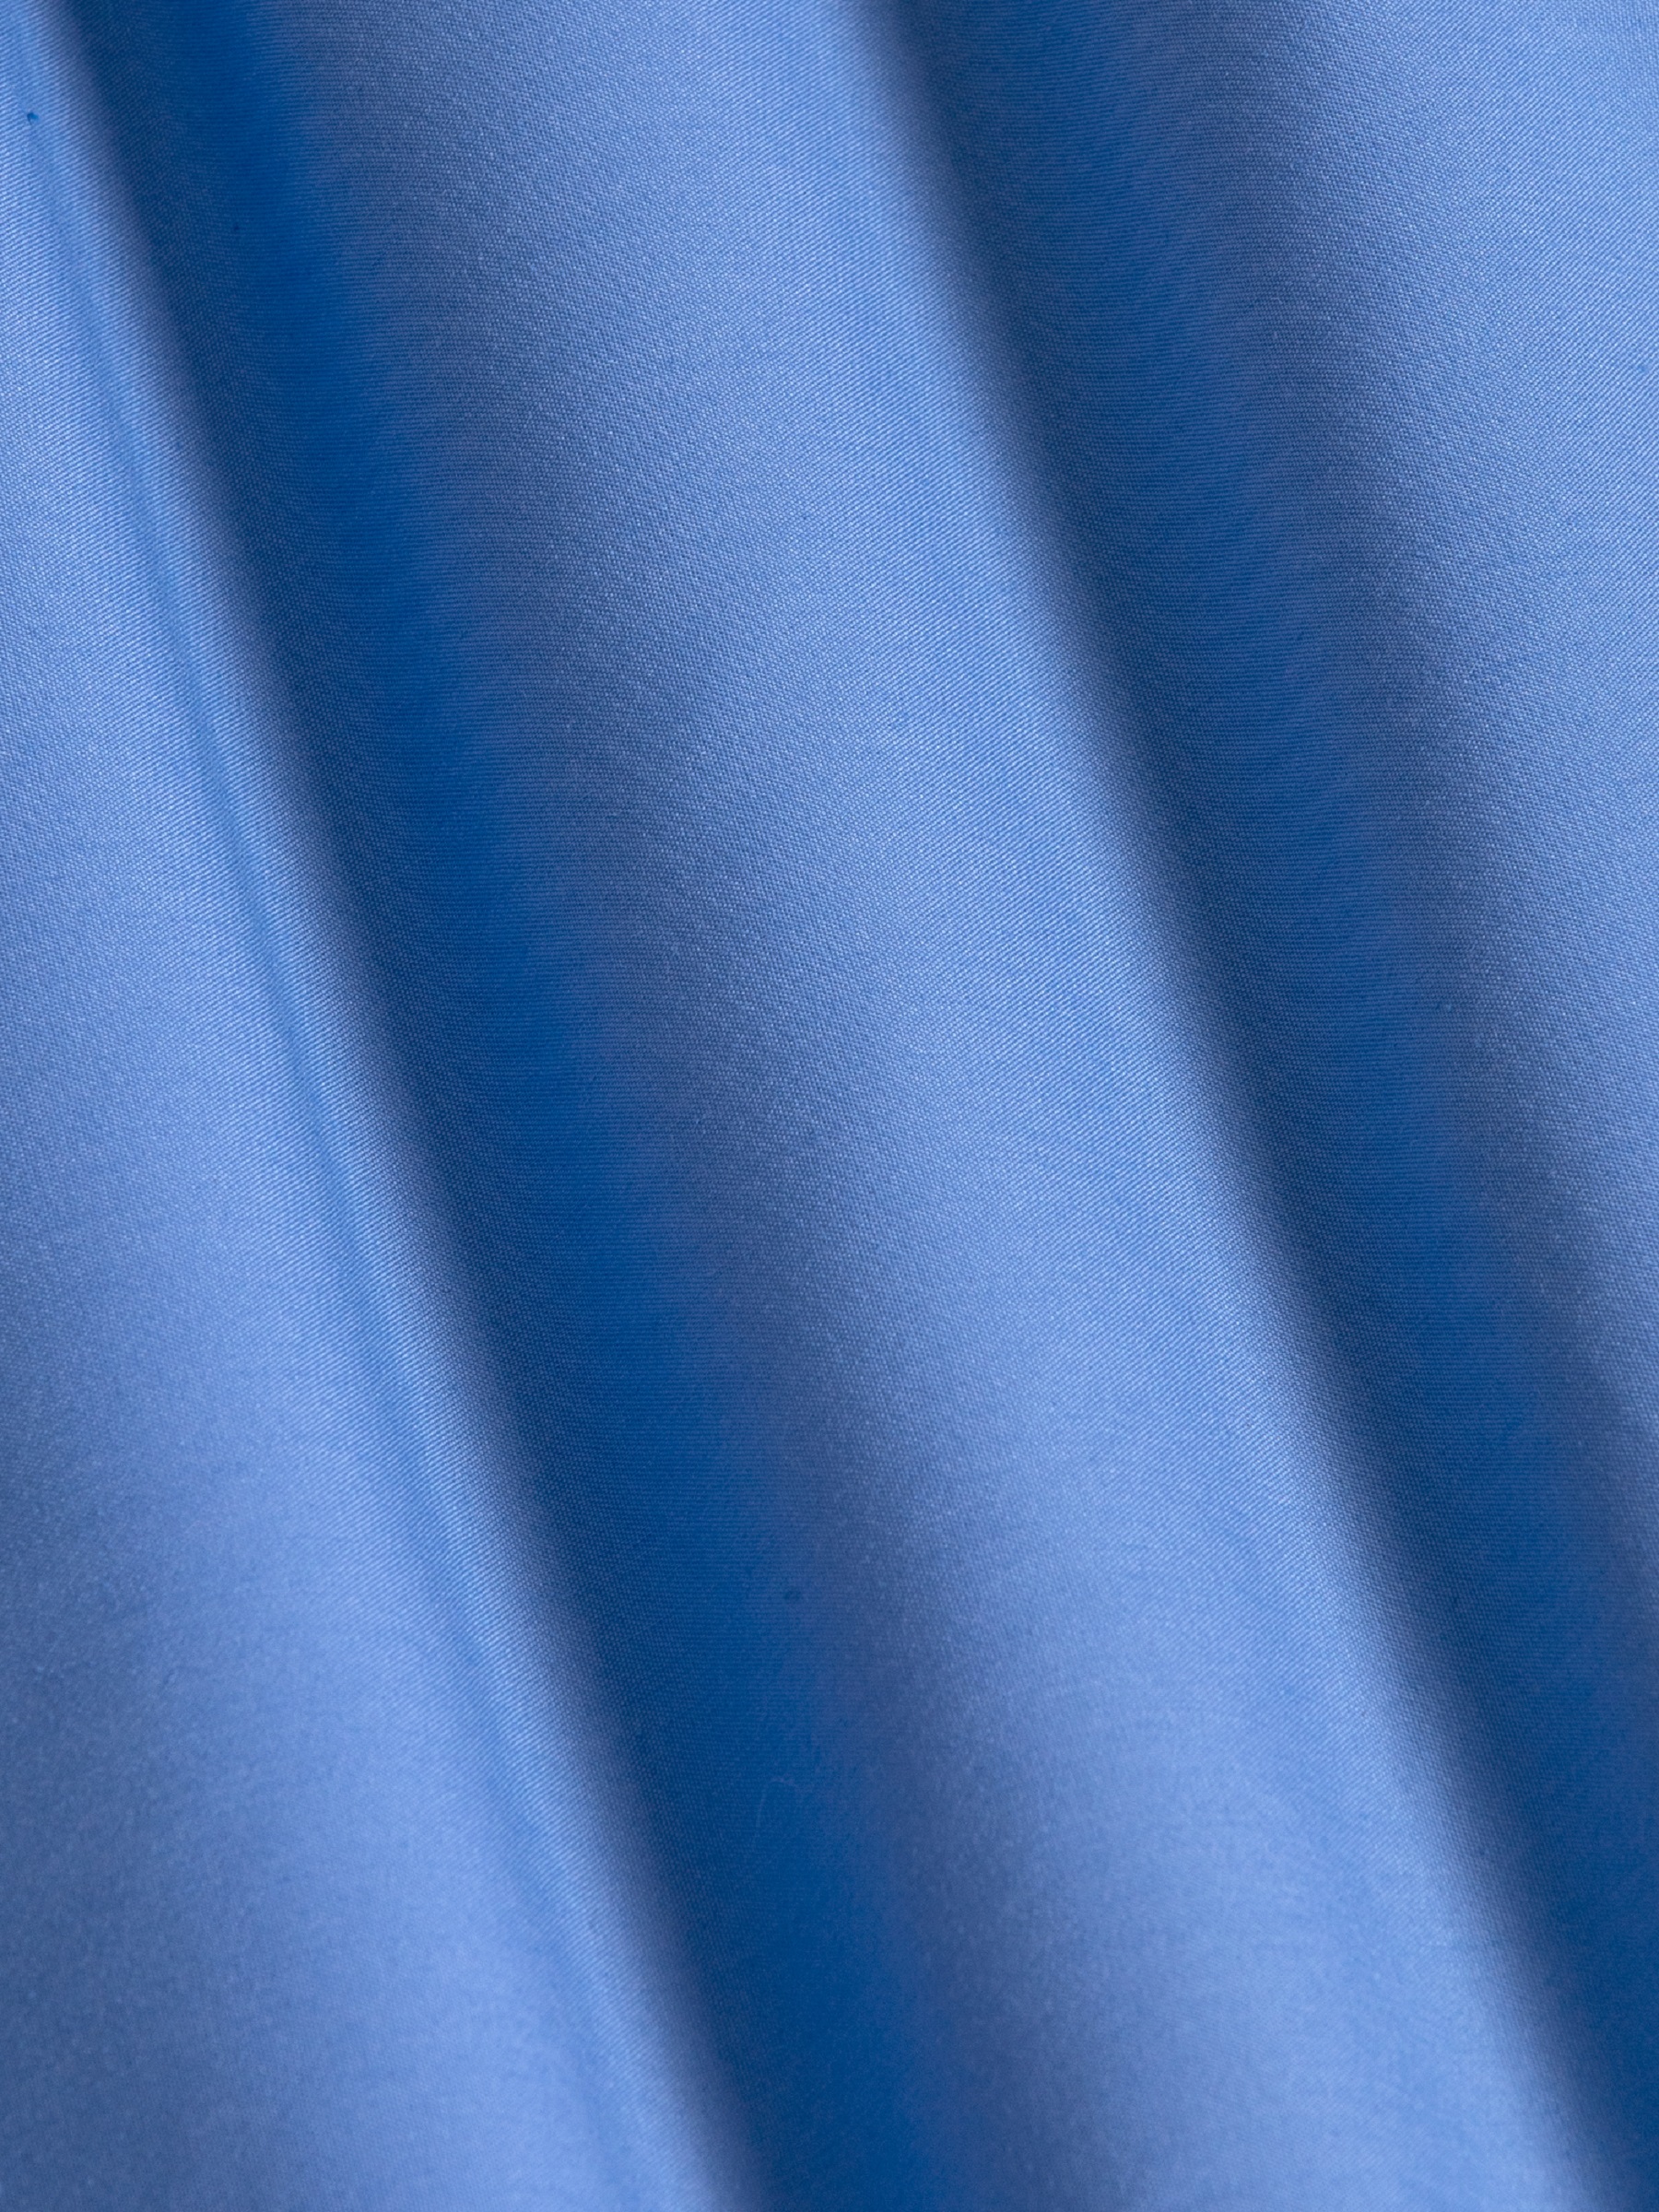 Leira Solid Dark Blue Long Sleeve Shirt